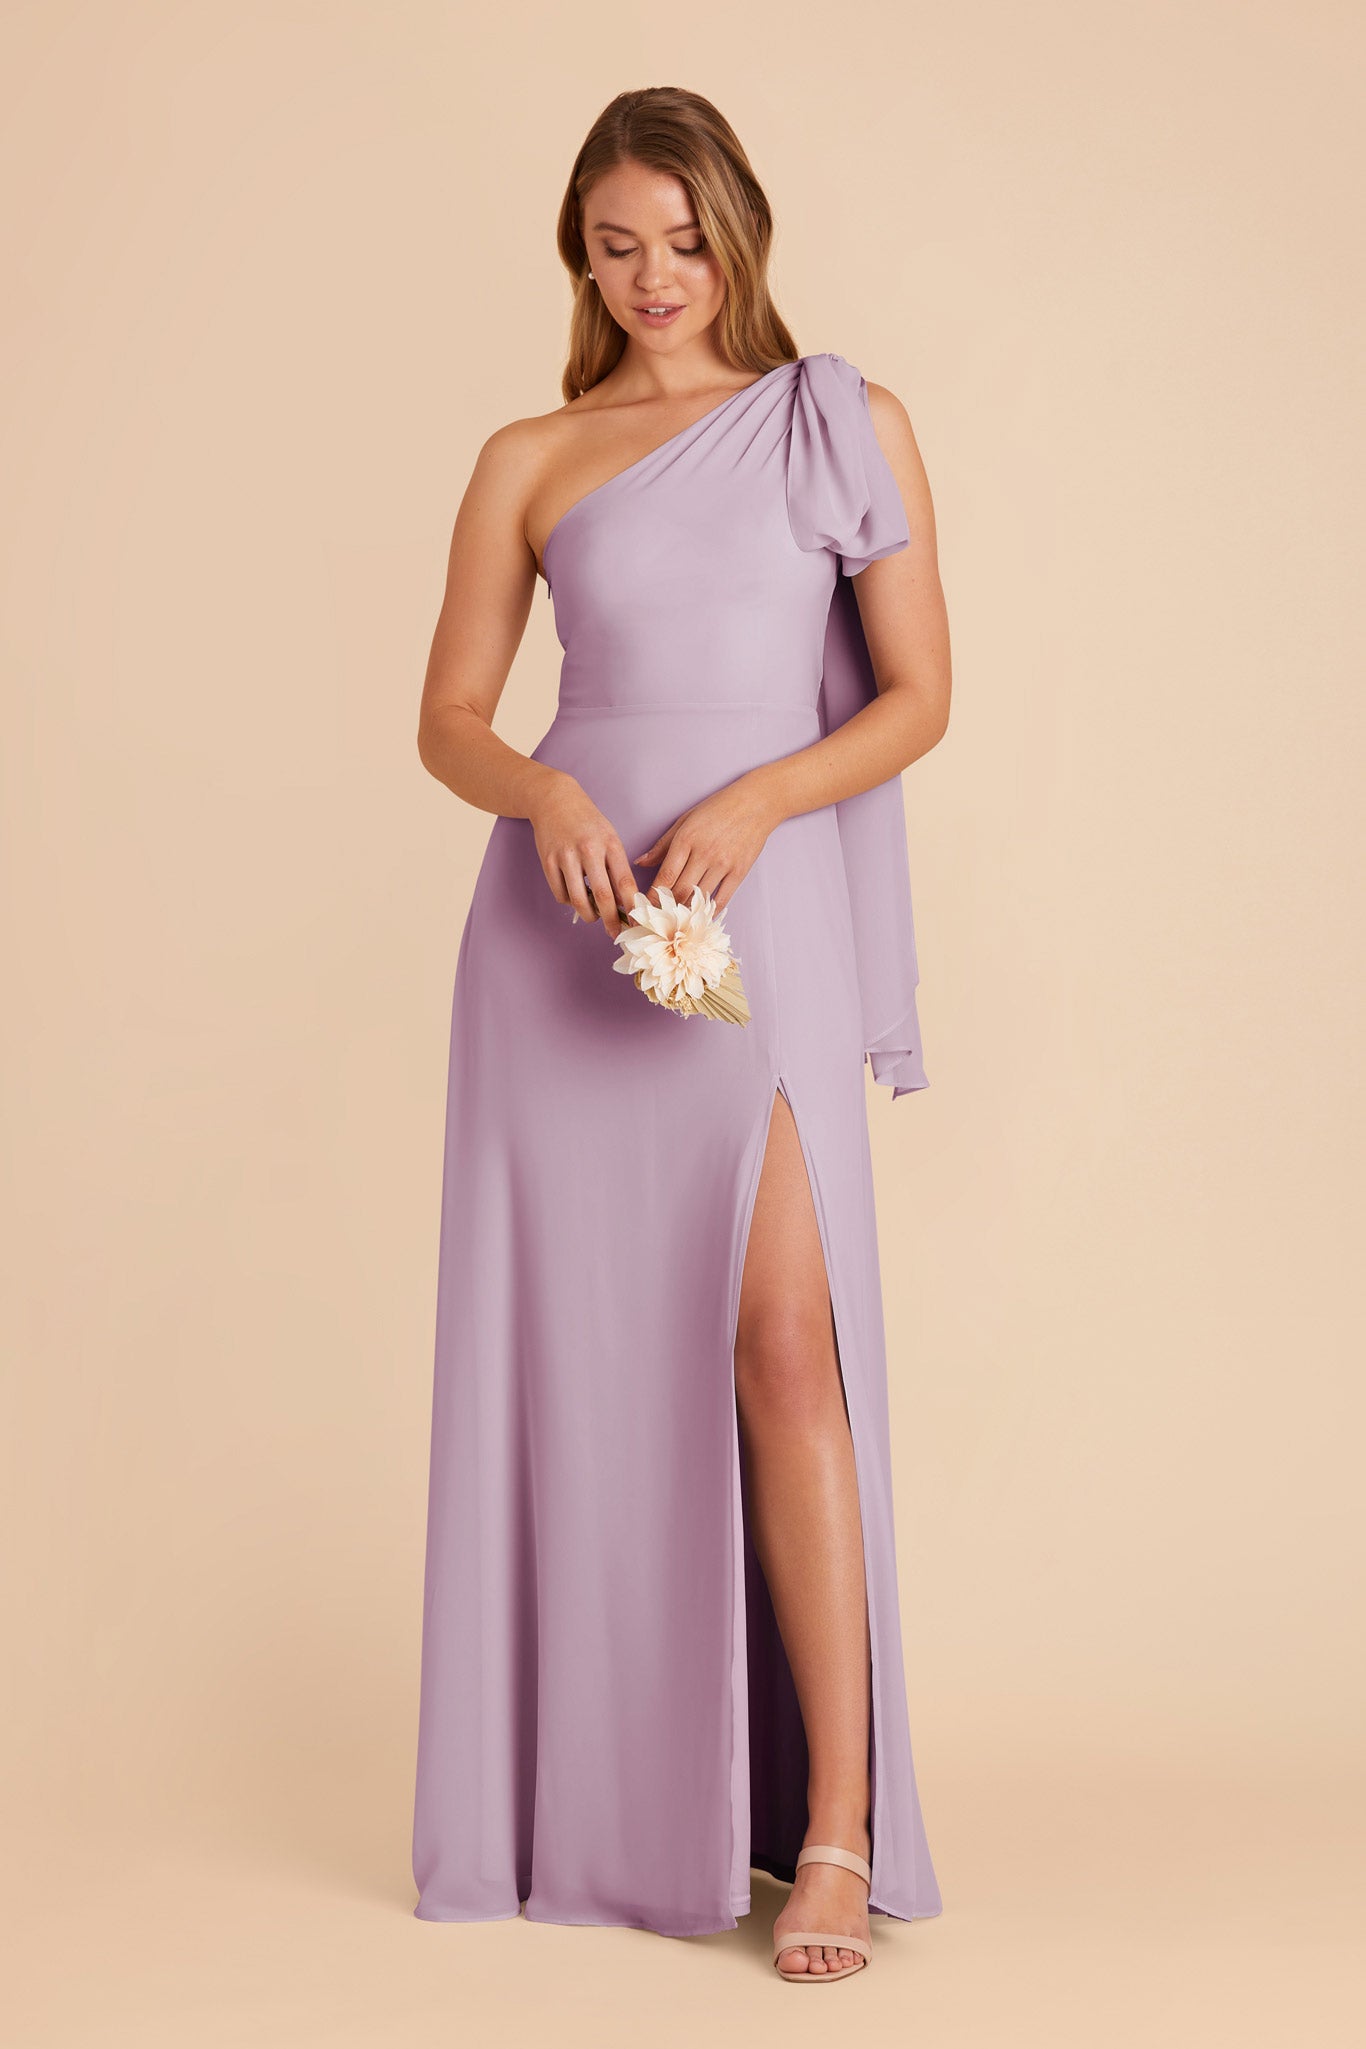 Lavender Melissa Chiffon Dress by Birdy Grey